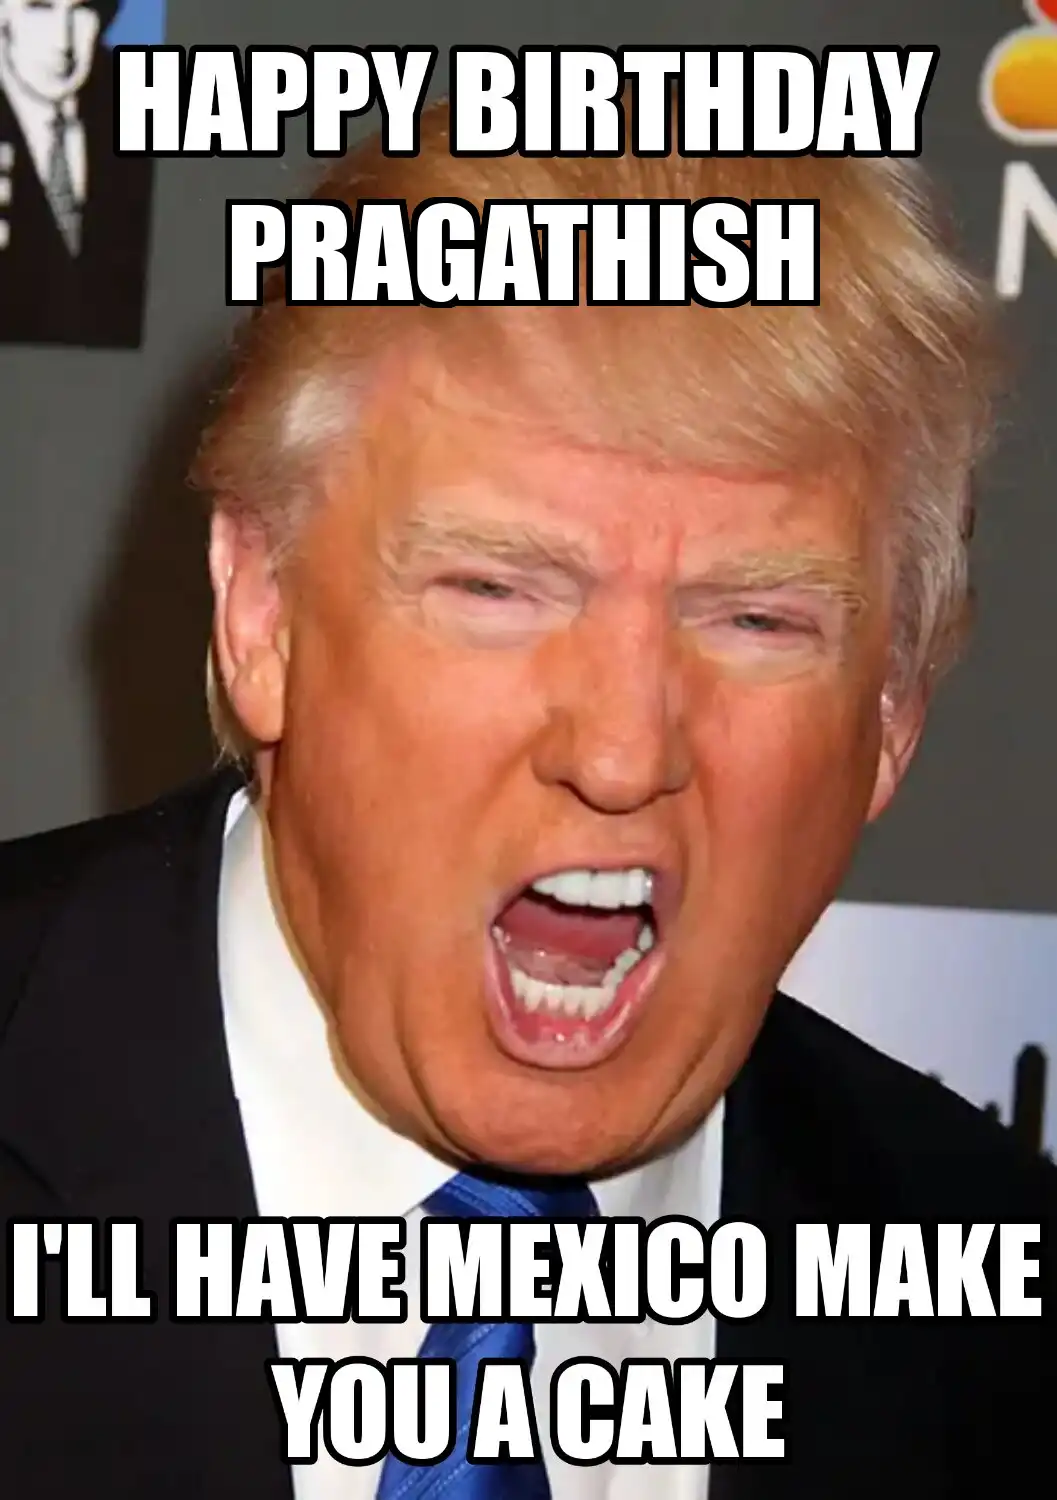 Happy Birthday Pragathish Mexico Make You A Cake Meme